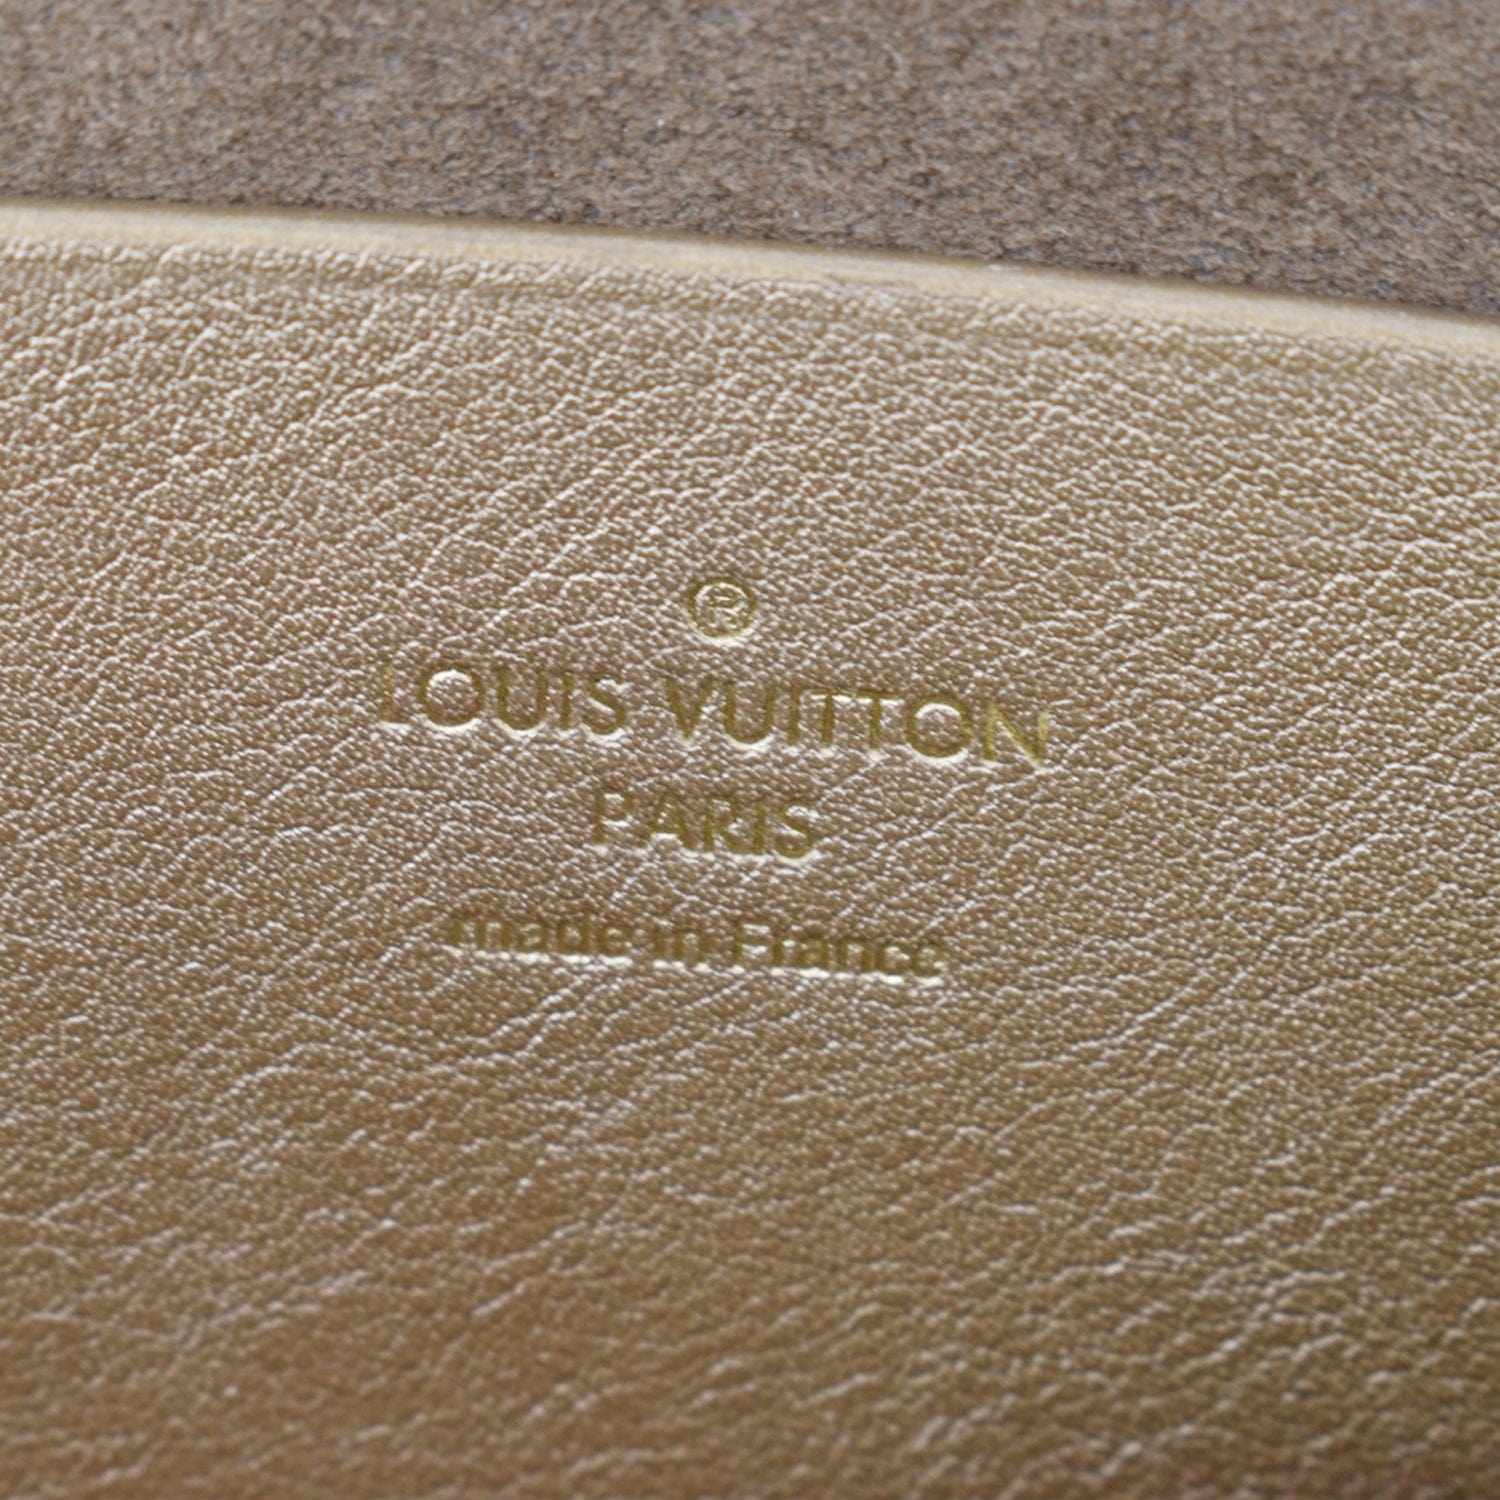 Louis Vuitton Louis Vuitton, Love note.